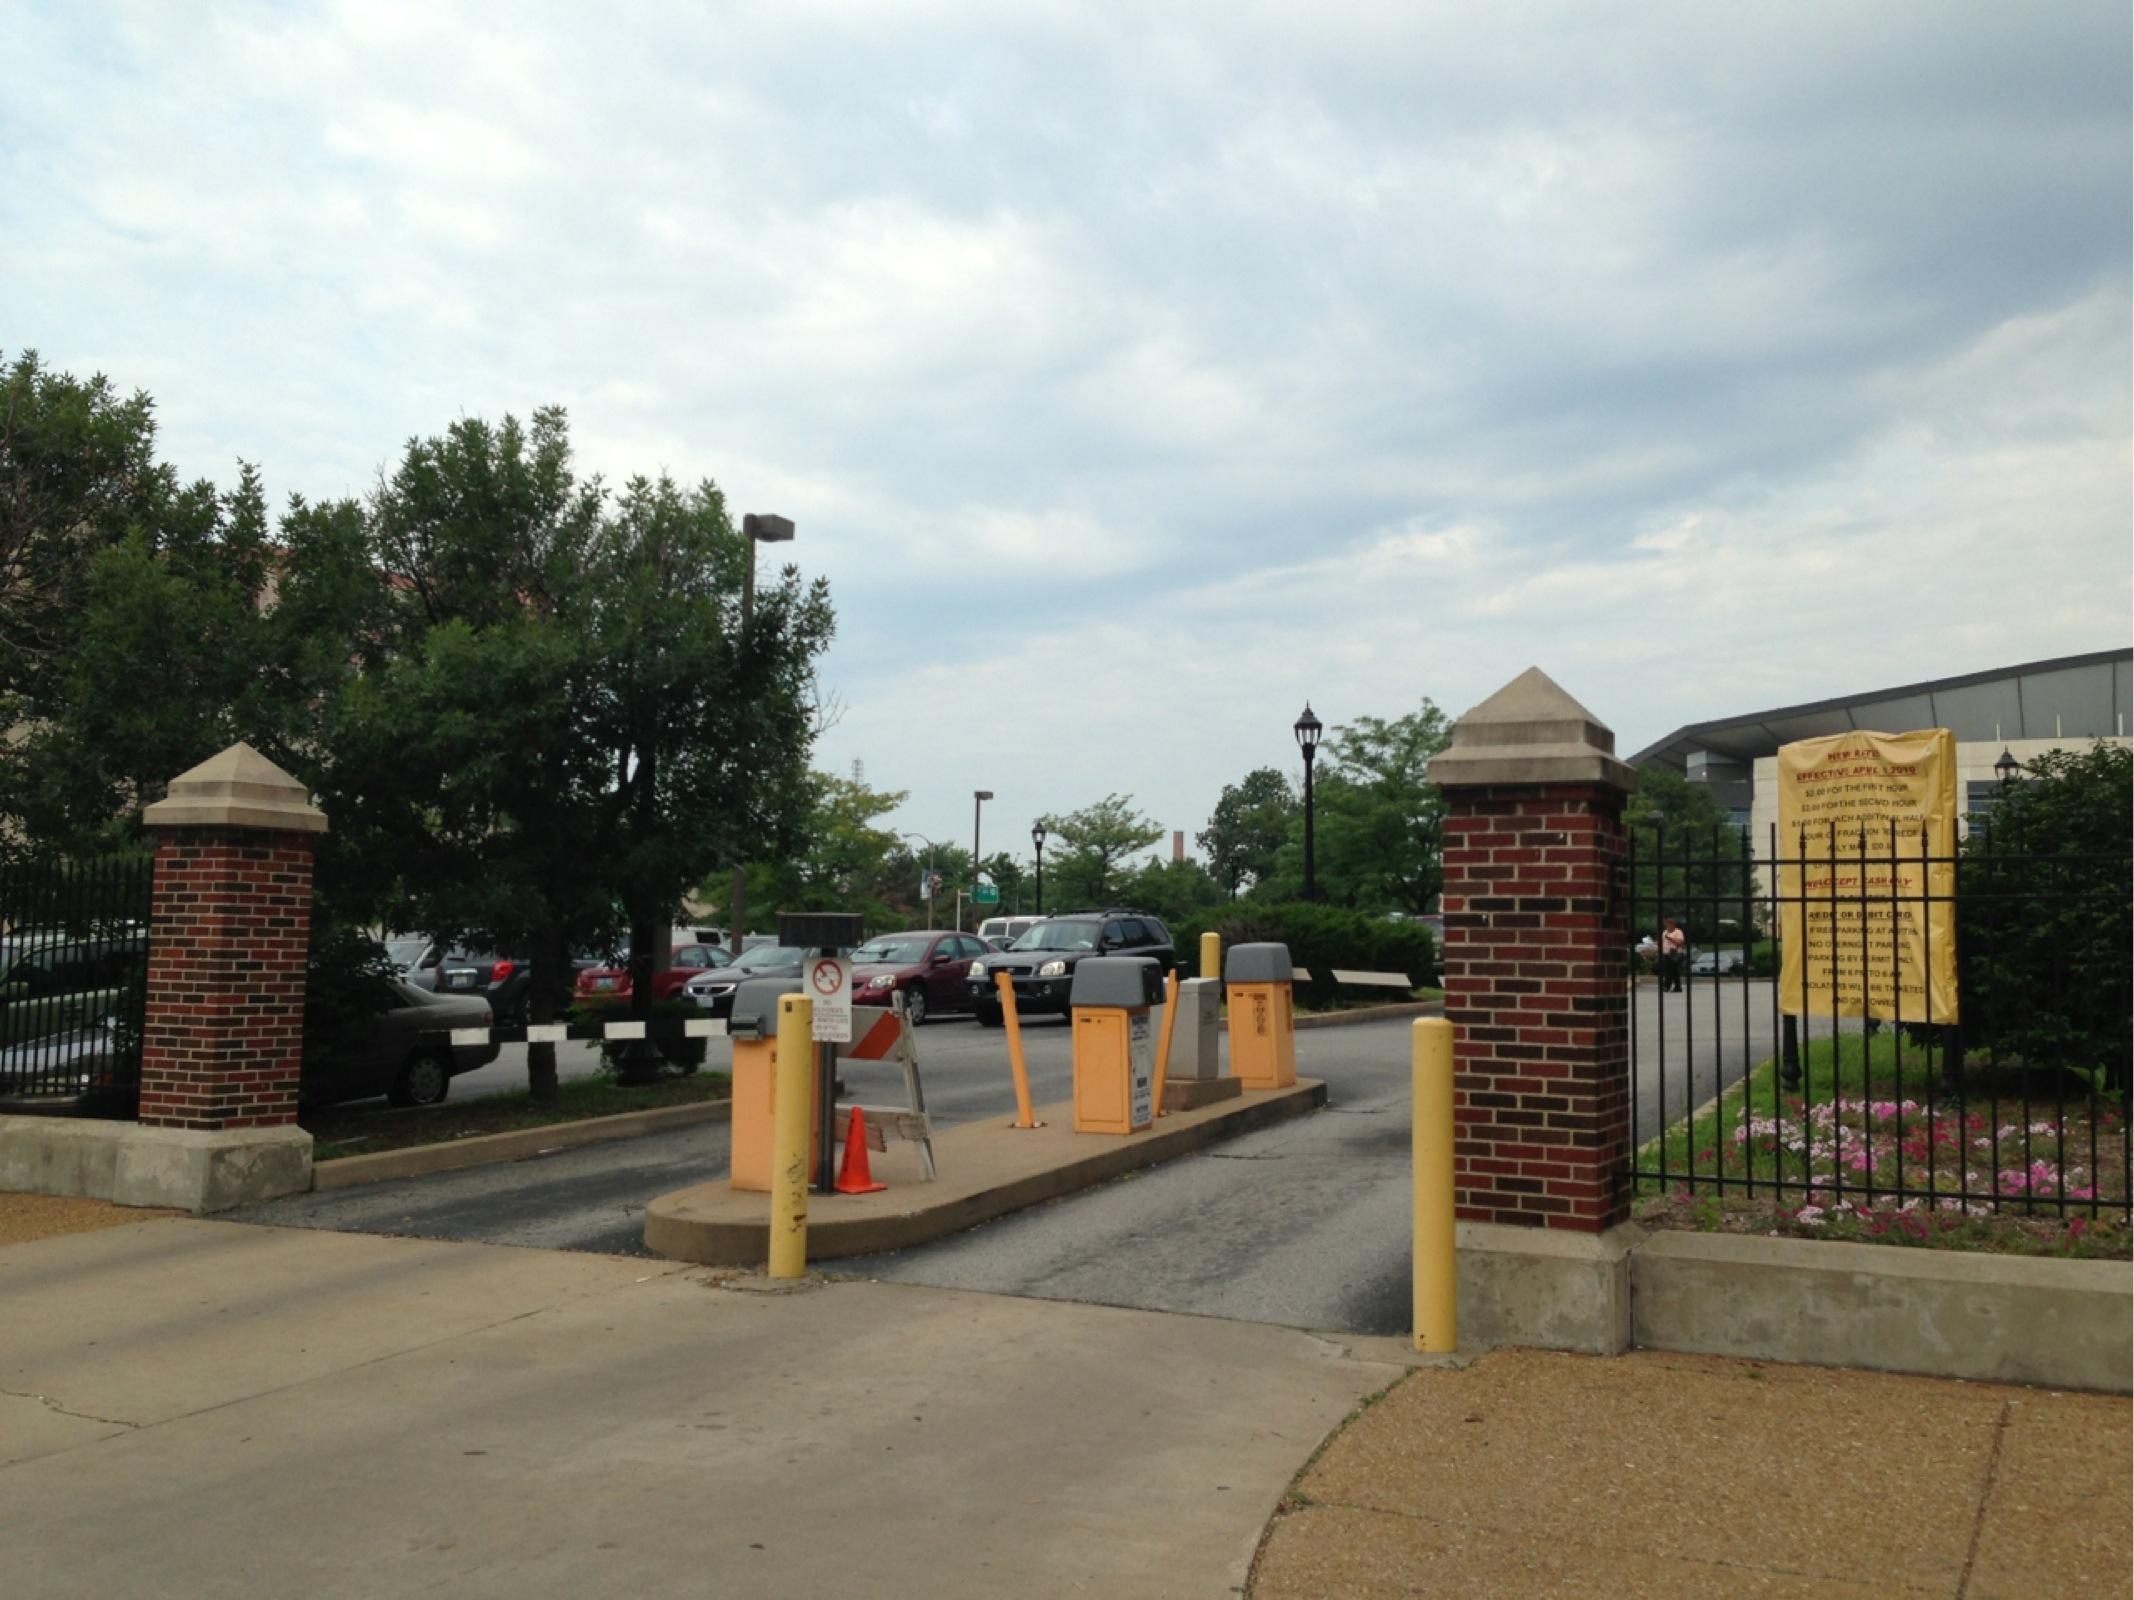 City Hall Municipal Parking Lot - Parking in St. Louis | ParkMe